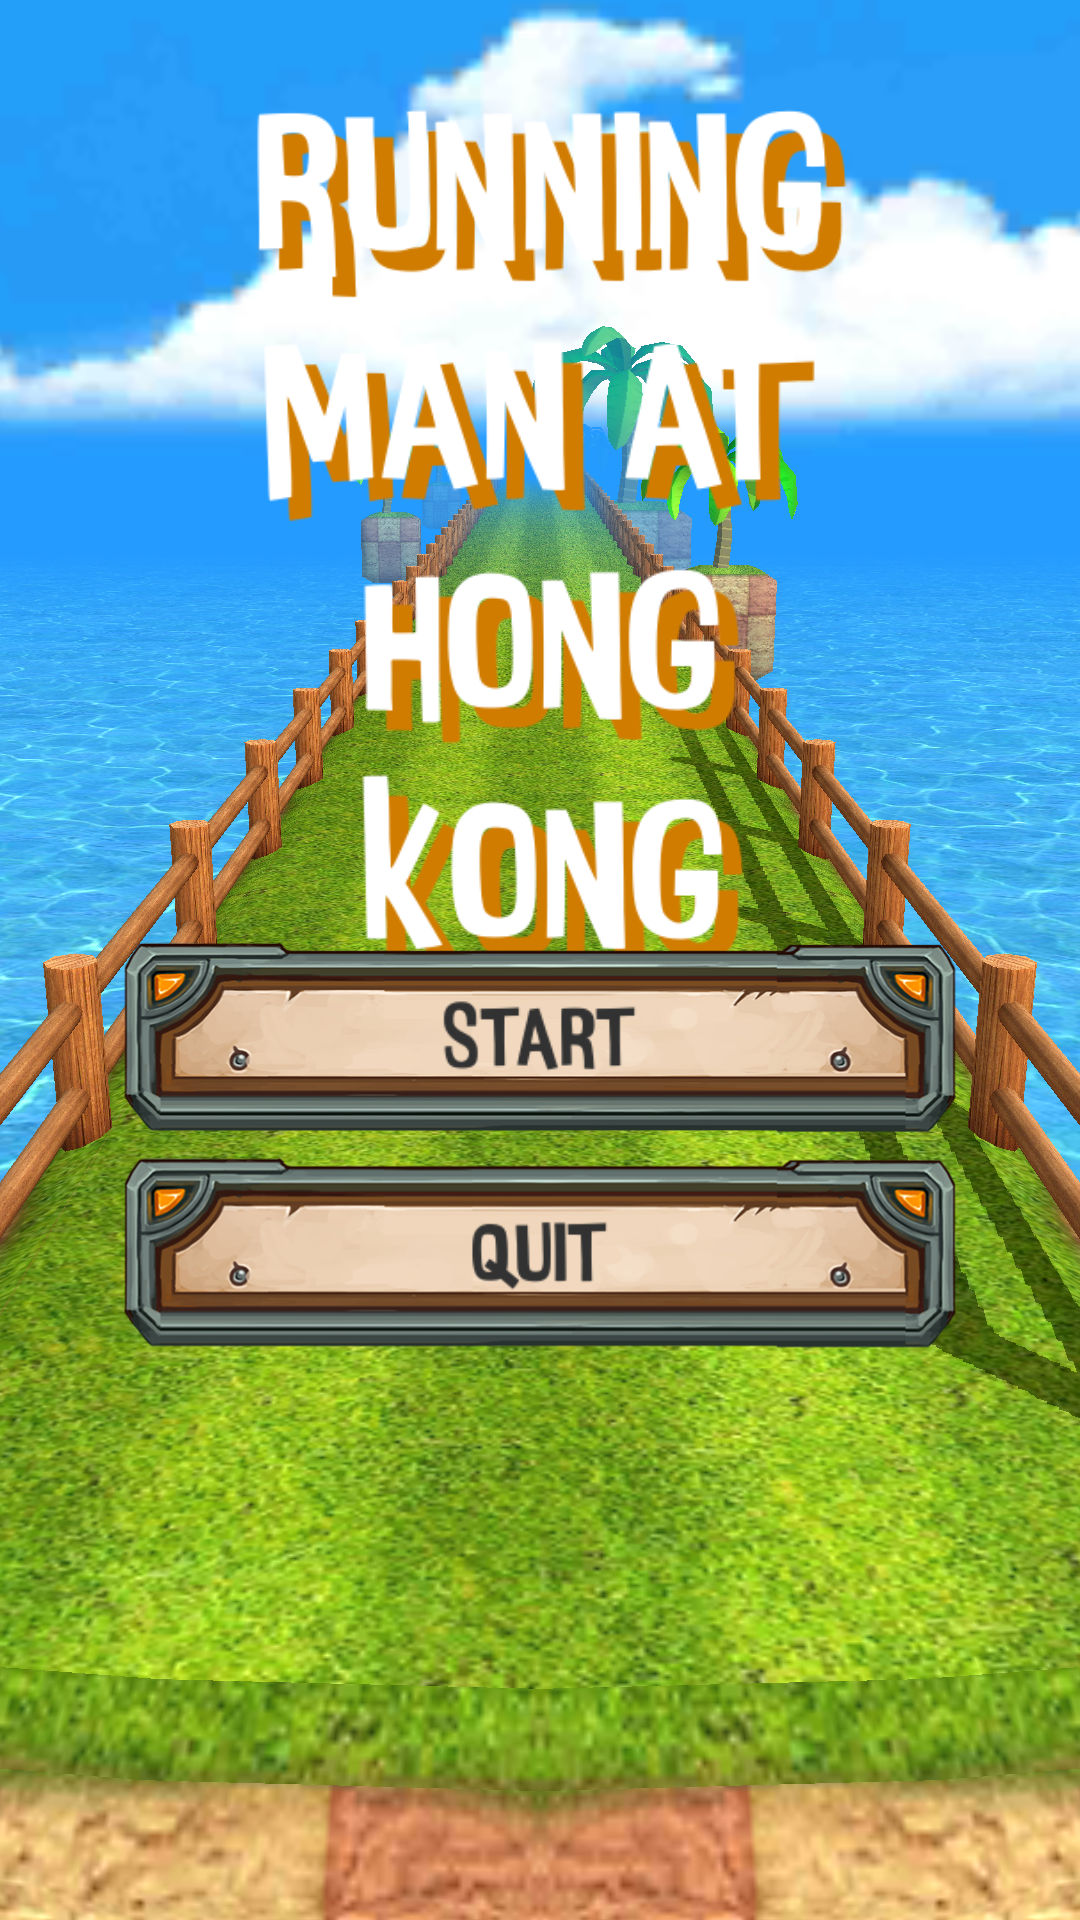 Screenshot 1 of Running Man di Hong Kong Saya berlari dengan Hong Kong 1.2